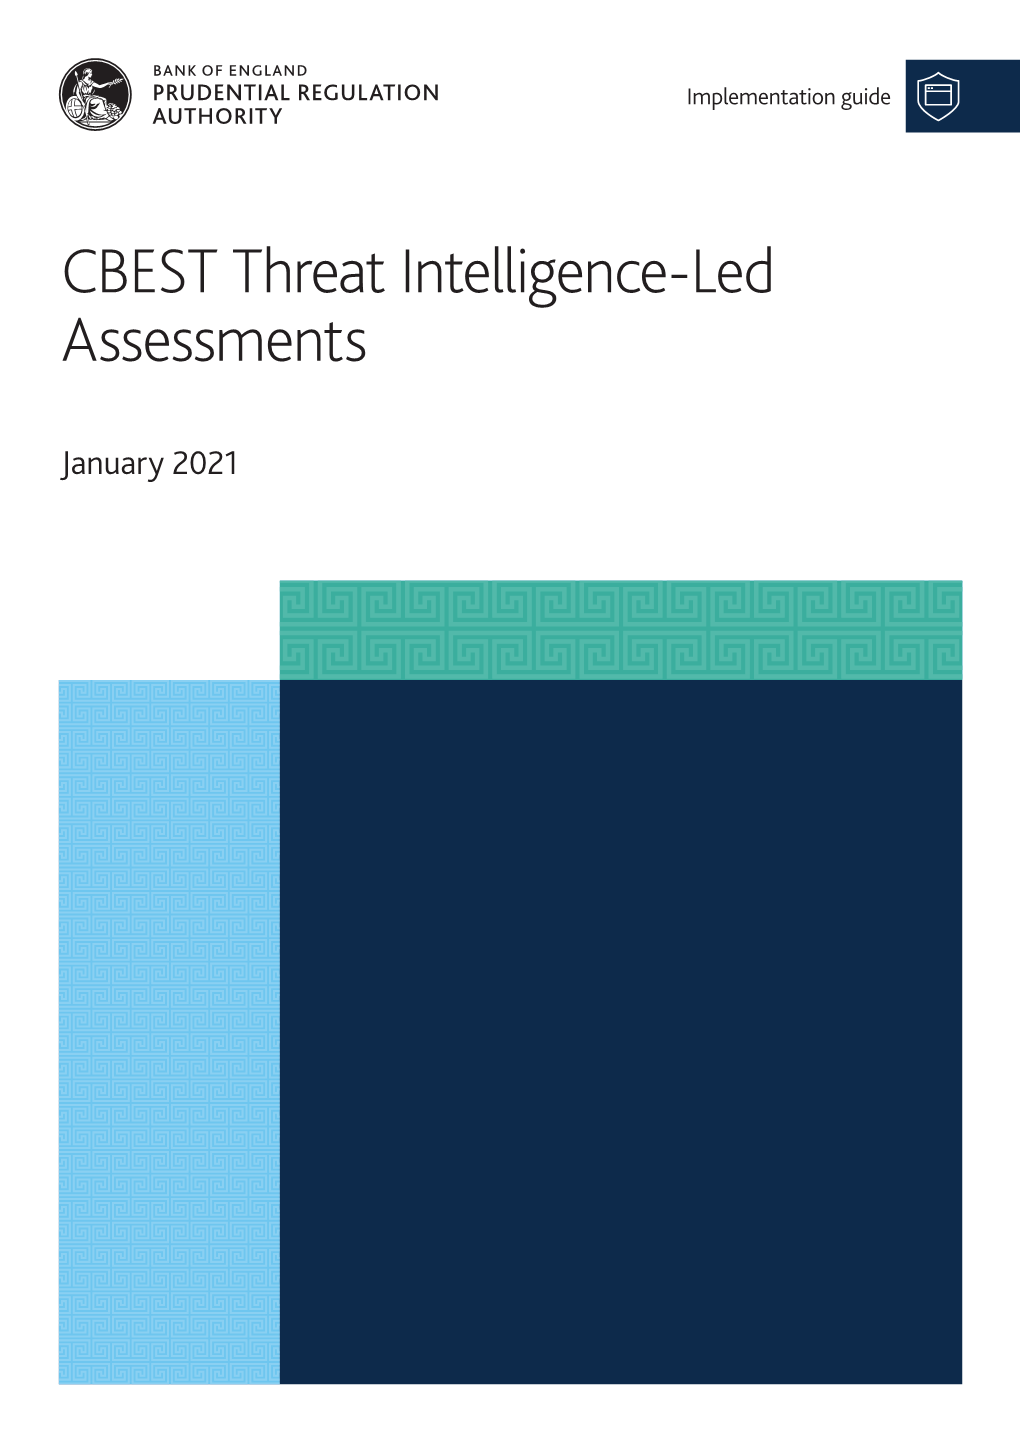 CBEST Threat Intelligence-Led Assessments